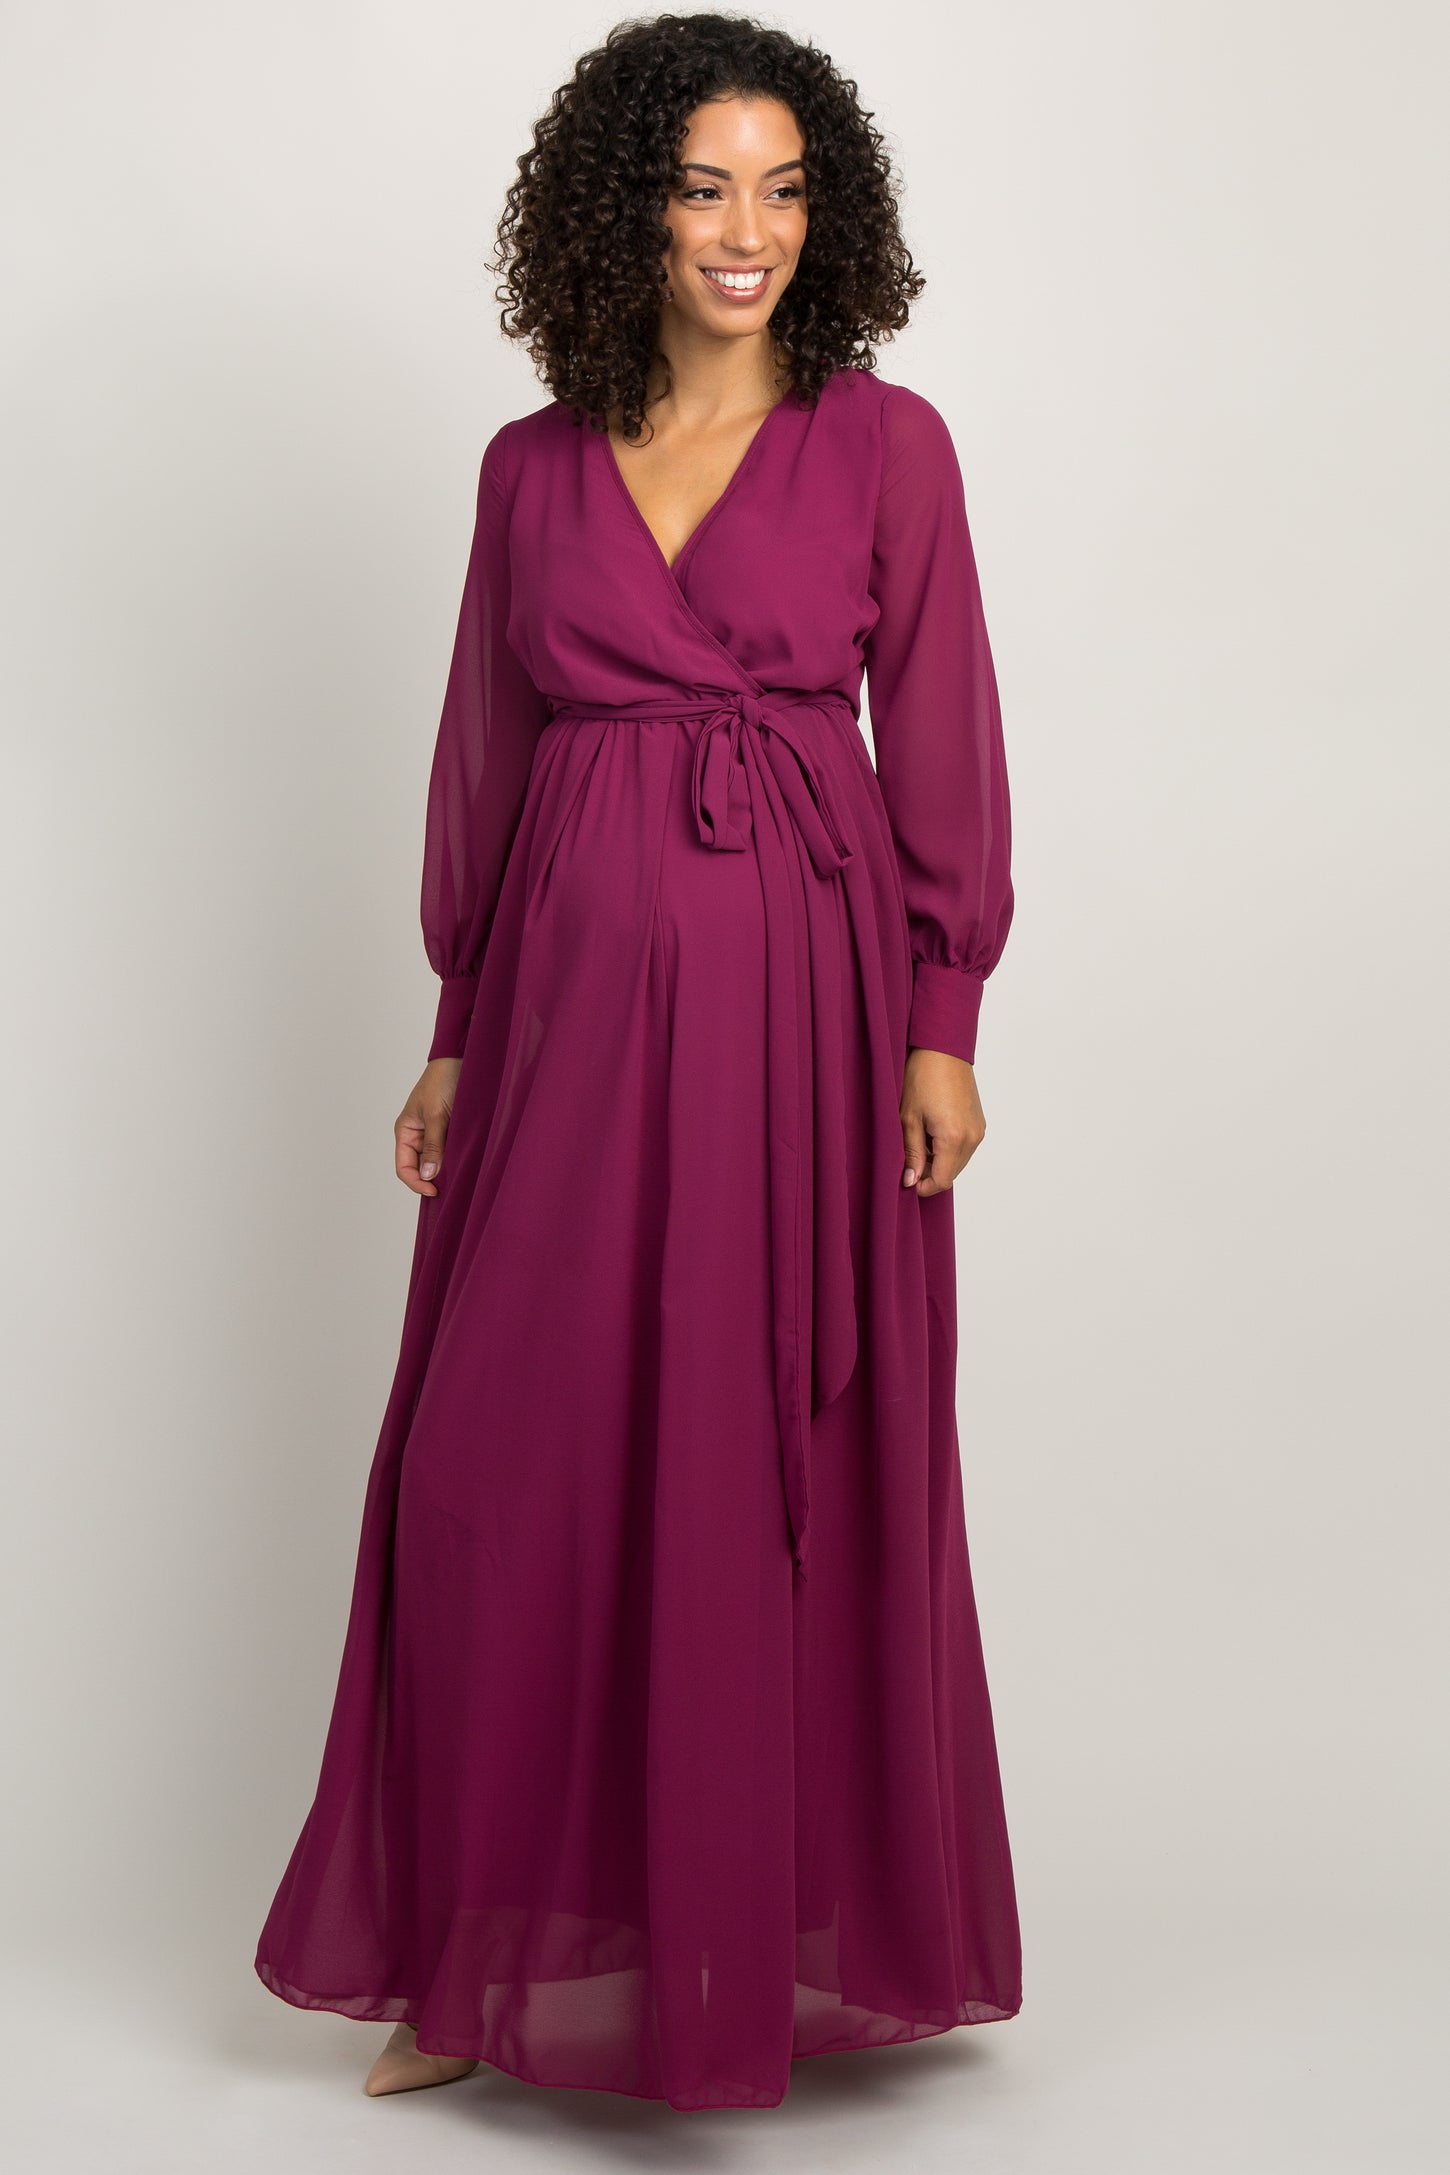 Magenta Chiffon Long Sleeve Pleated Maternity Maxi Dress– PinkBlush